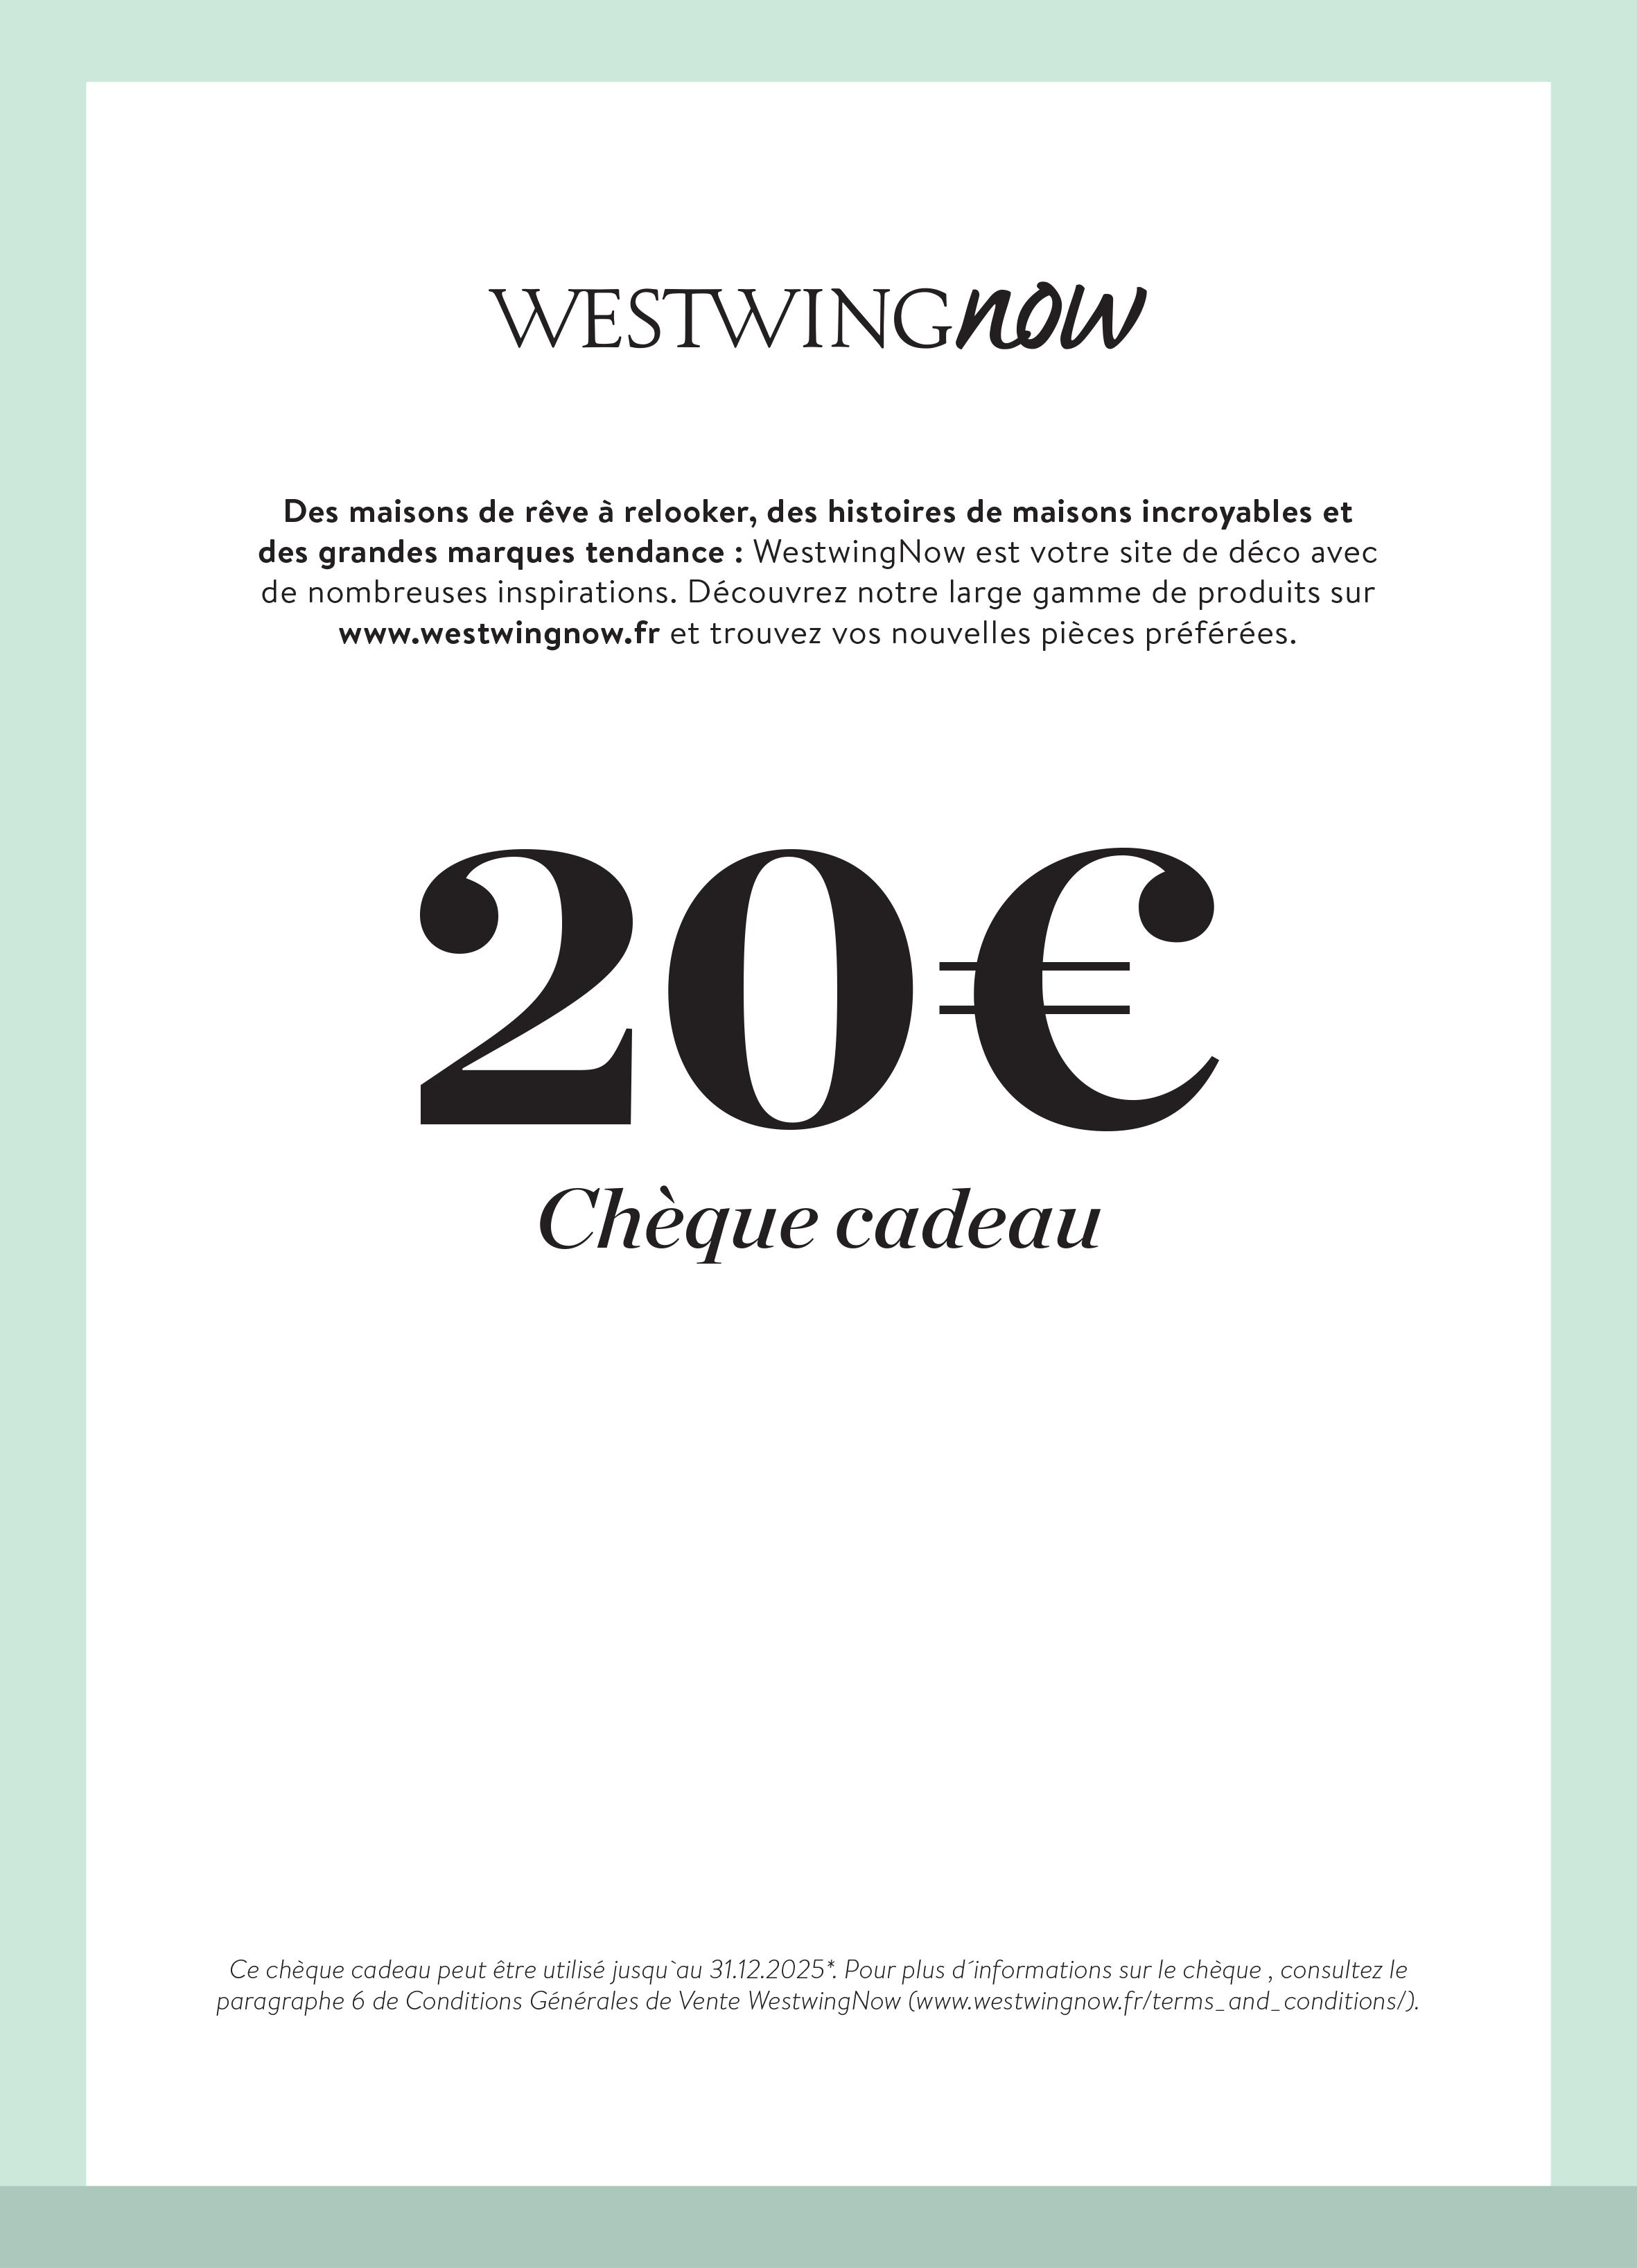 Cheque Cadeau A Imprimer Westwingnow